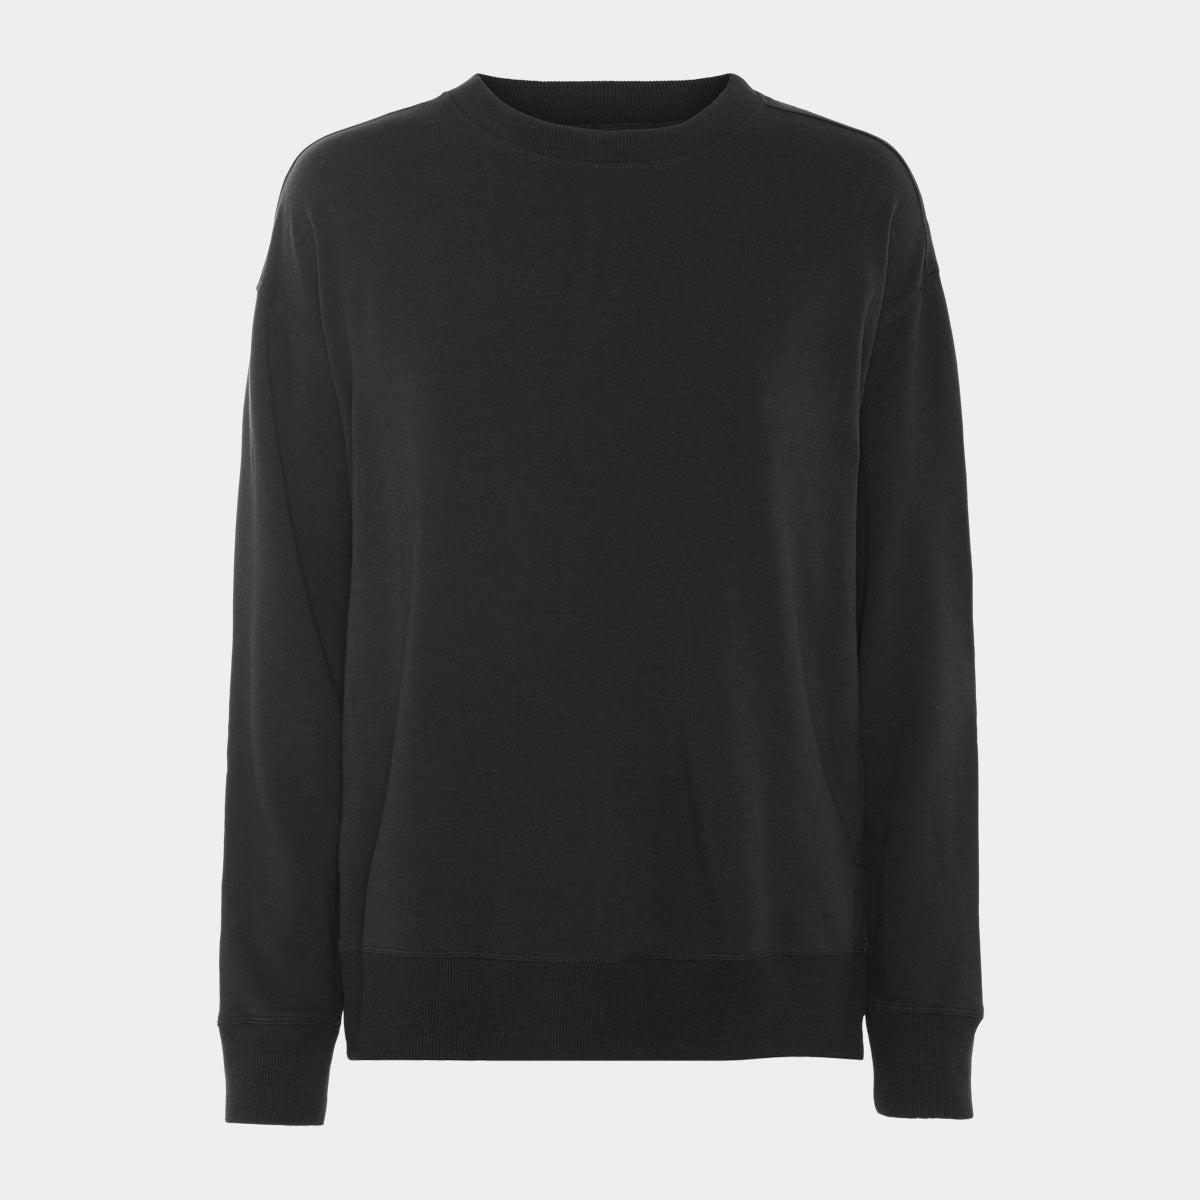 Se Bambus sweatshirt | sorte sweatshirt til damer fra Boody, S hos Bambustøj.dk